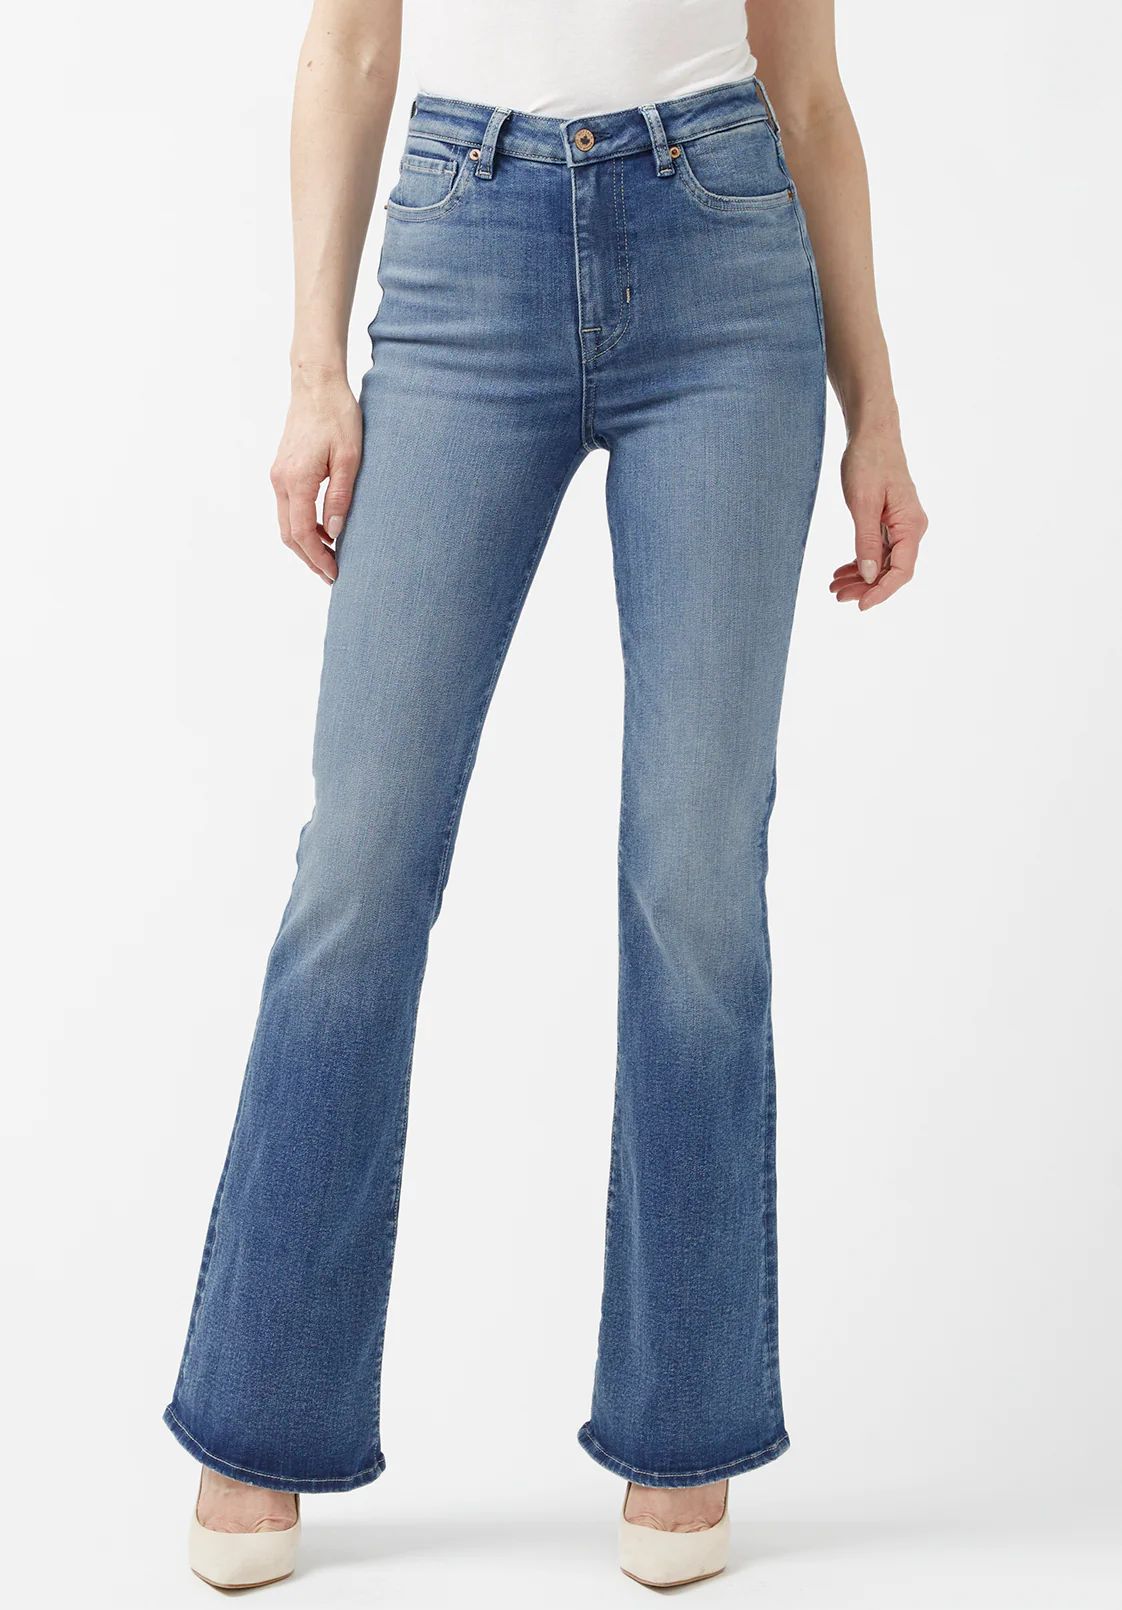 Joplin High Rise Women’s Jeans with Flared Leg - BL15899 | Buffalo David Bitton